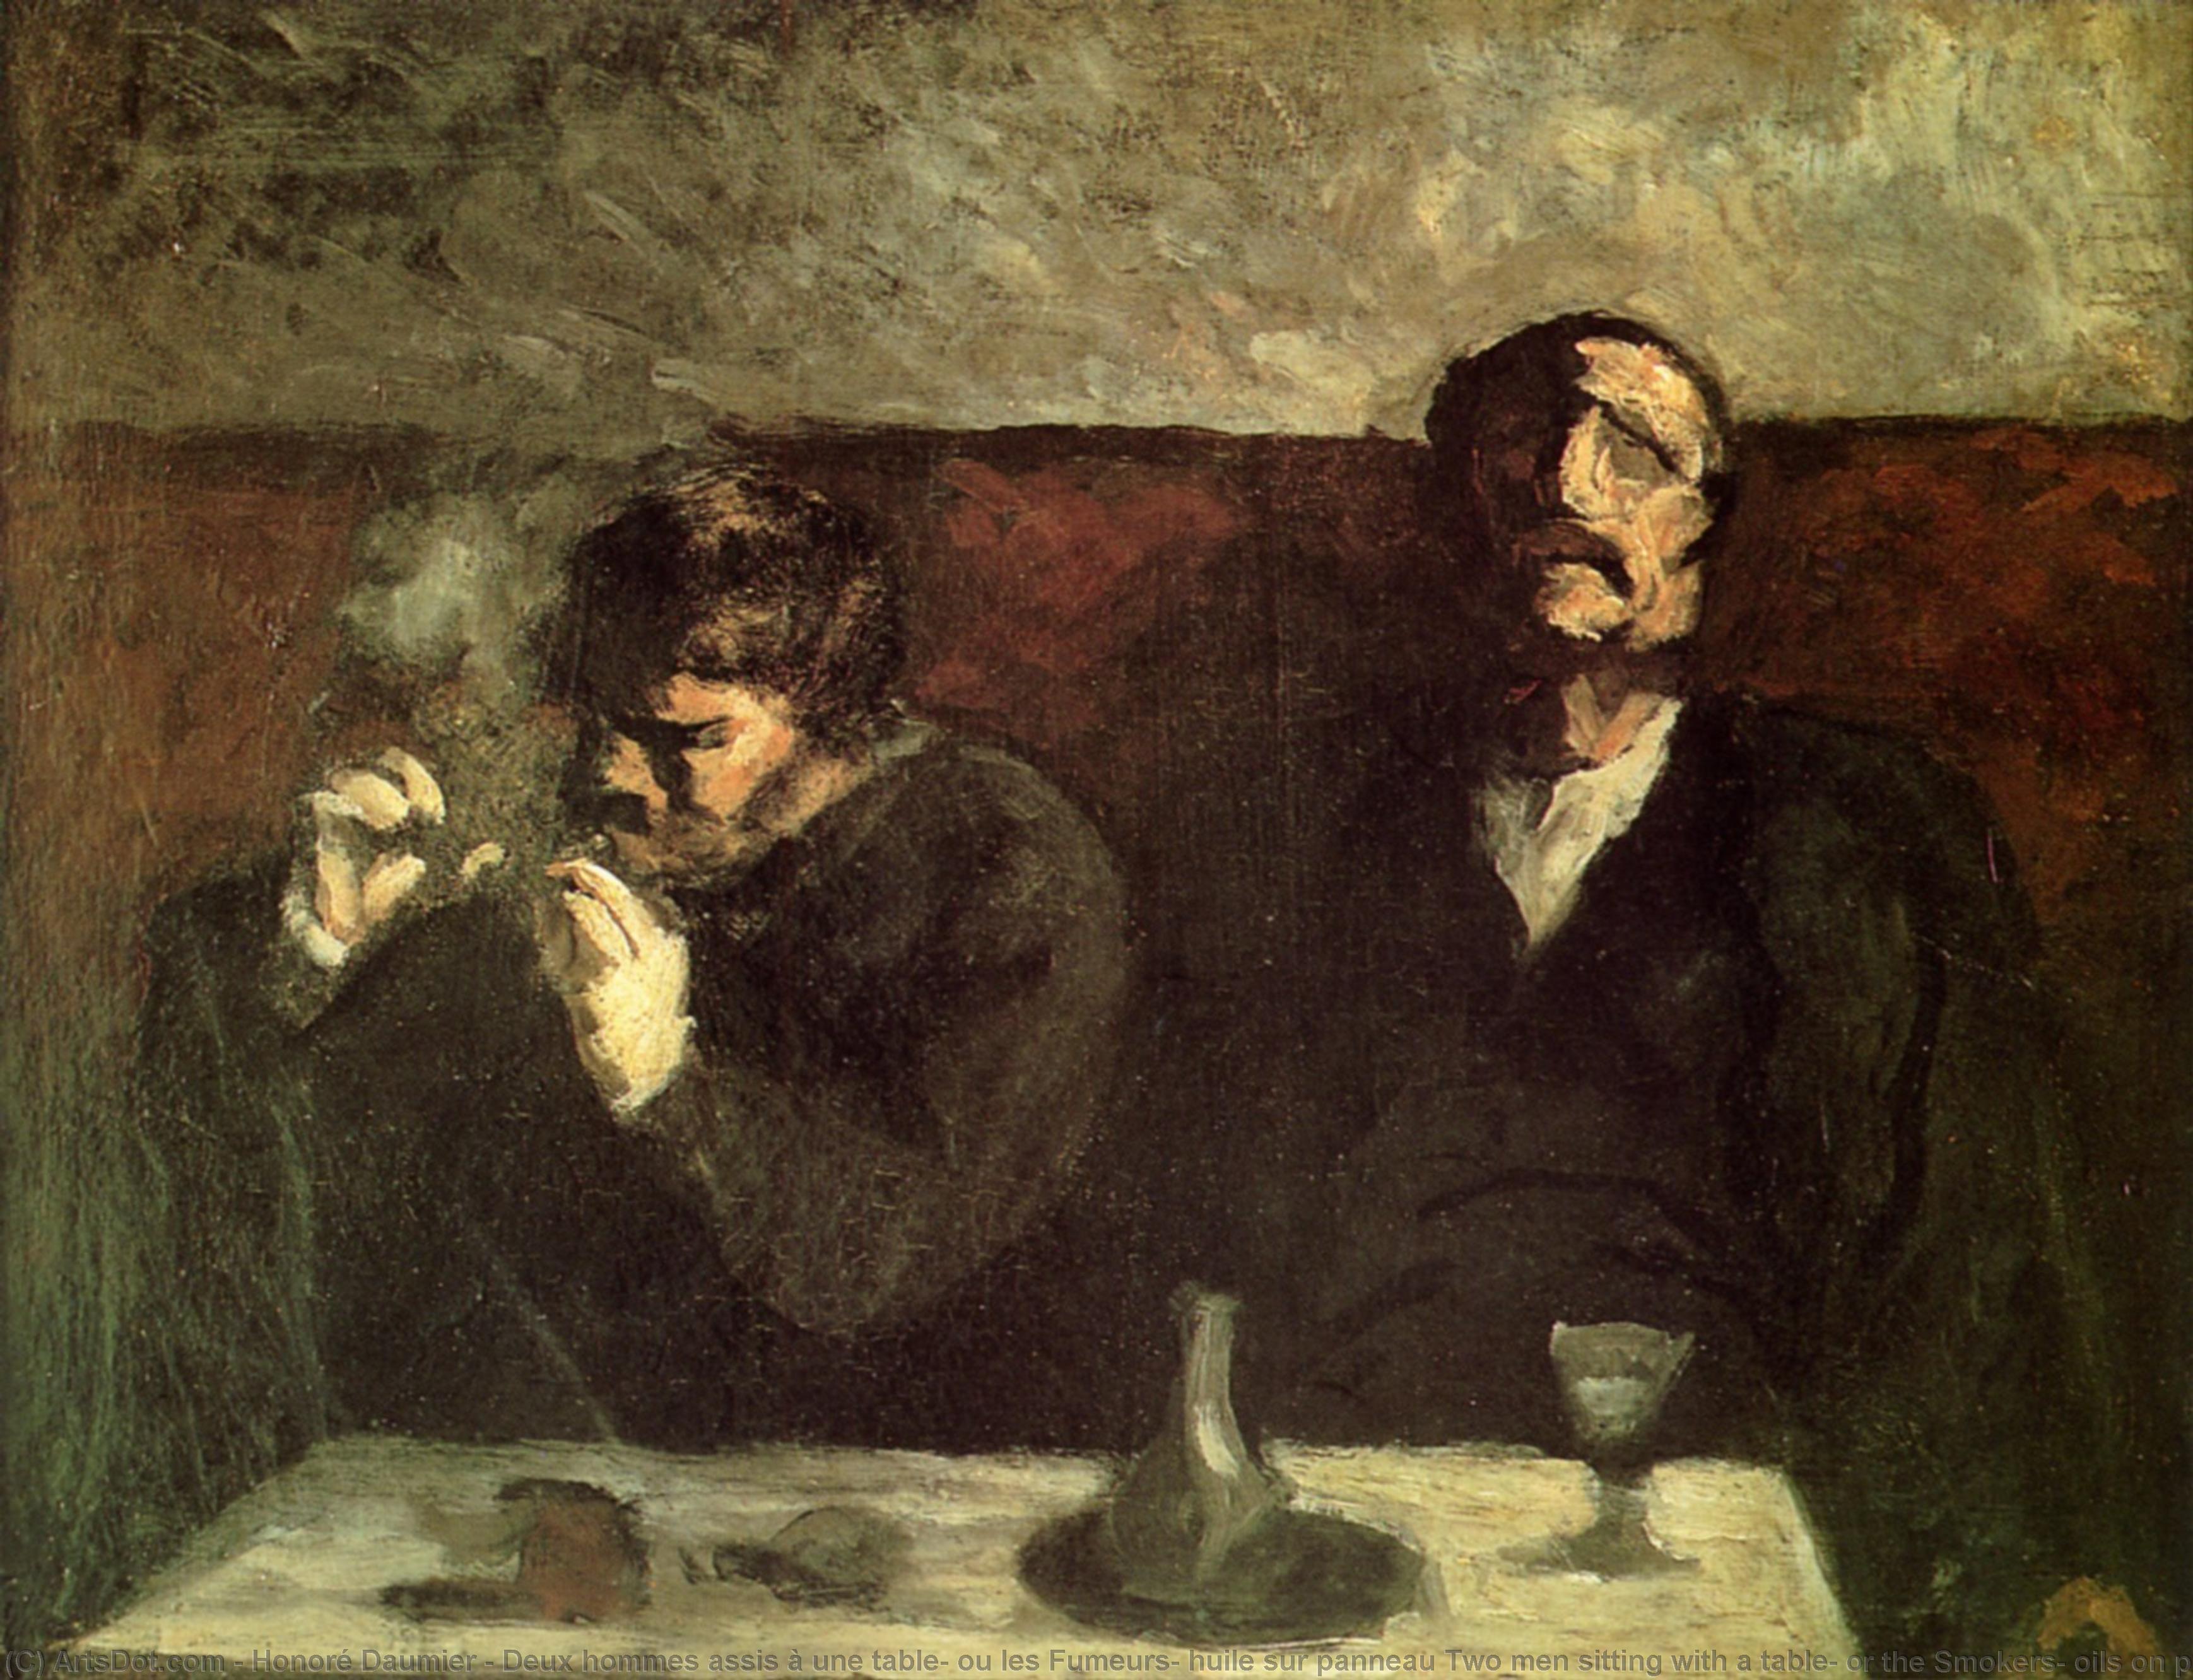 WikiOO.org - Güzel Sanatlar Ansiklopedisi - Resim, Resimler Honoré Daumier - Deux hommes assis à une table, ou les Fumeurs, huile sur panneau Two men sitting with a table, or the Smokers, oils on panel